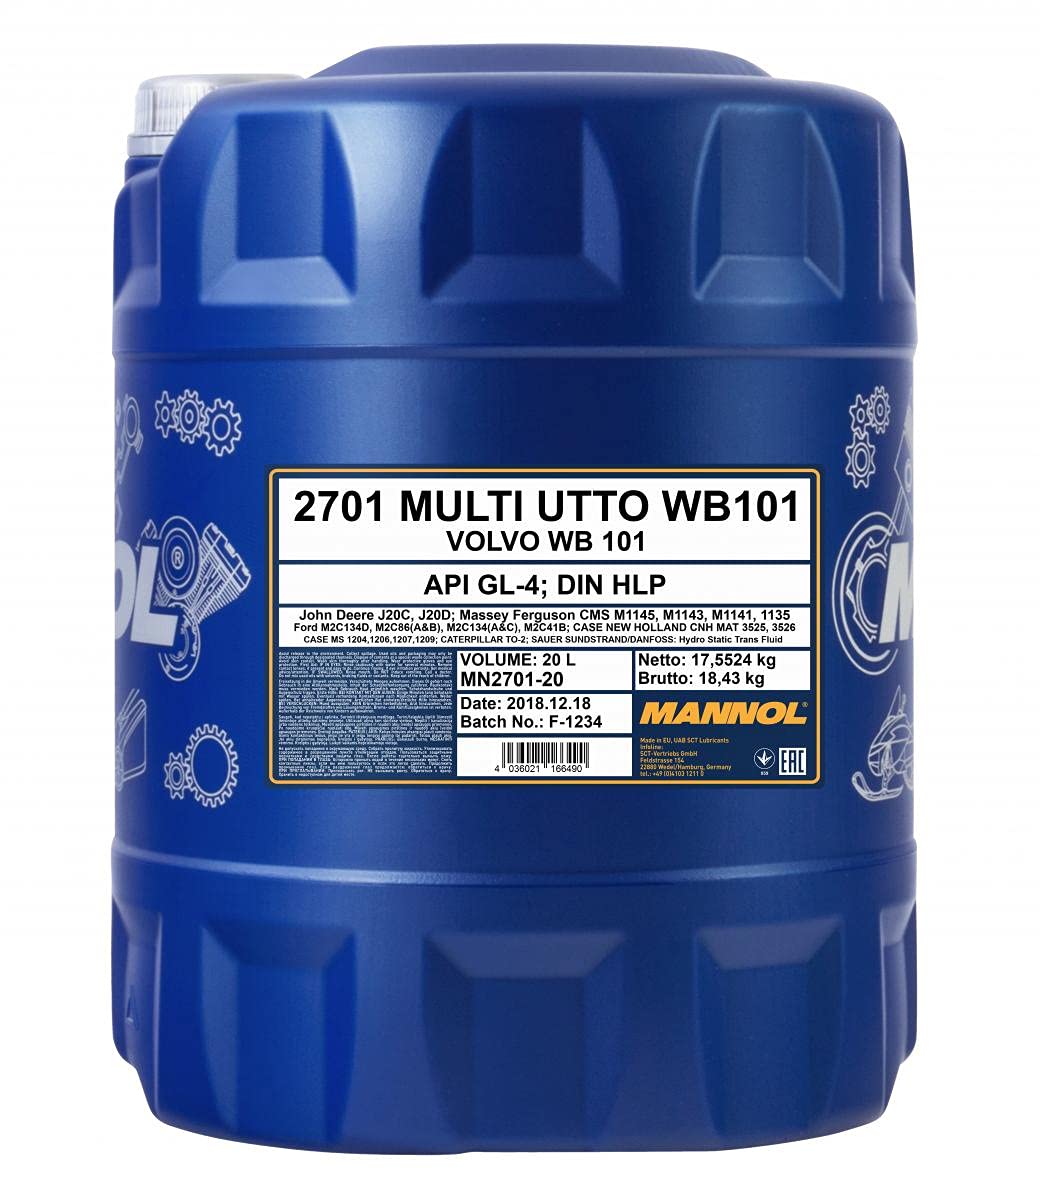 MANNOL 20 Liter, Multi UTTO WB 101 Traktoröl von MANNOL